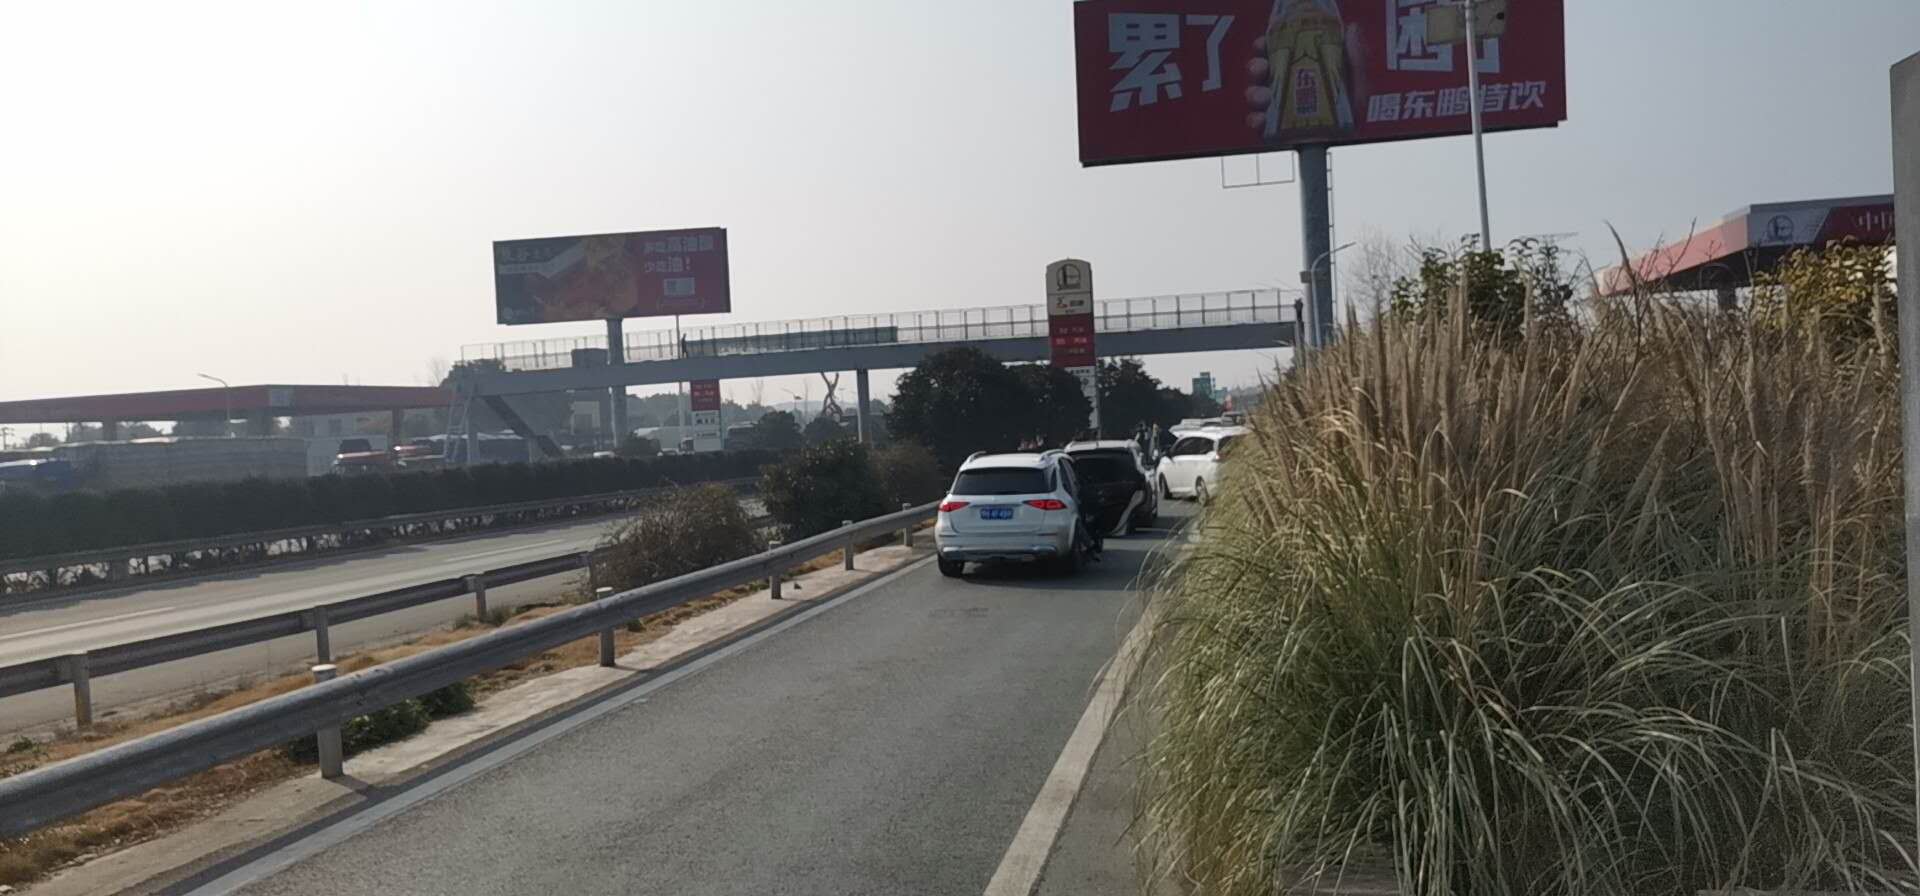 高速路况实时查询:封路,襄荆高速荆州服务区这是怎么了,大雾都.